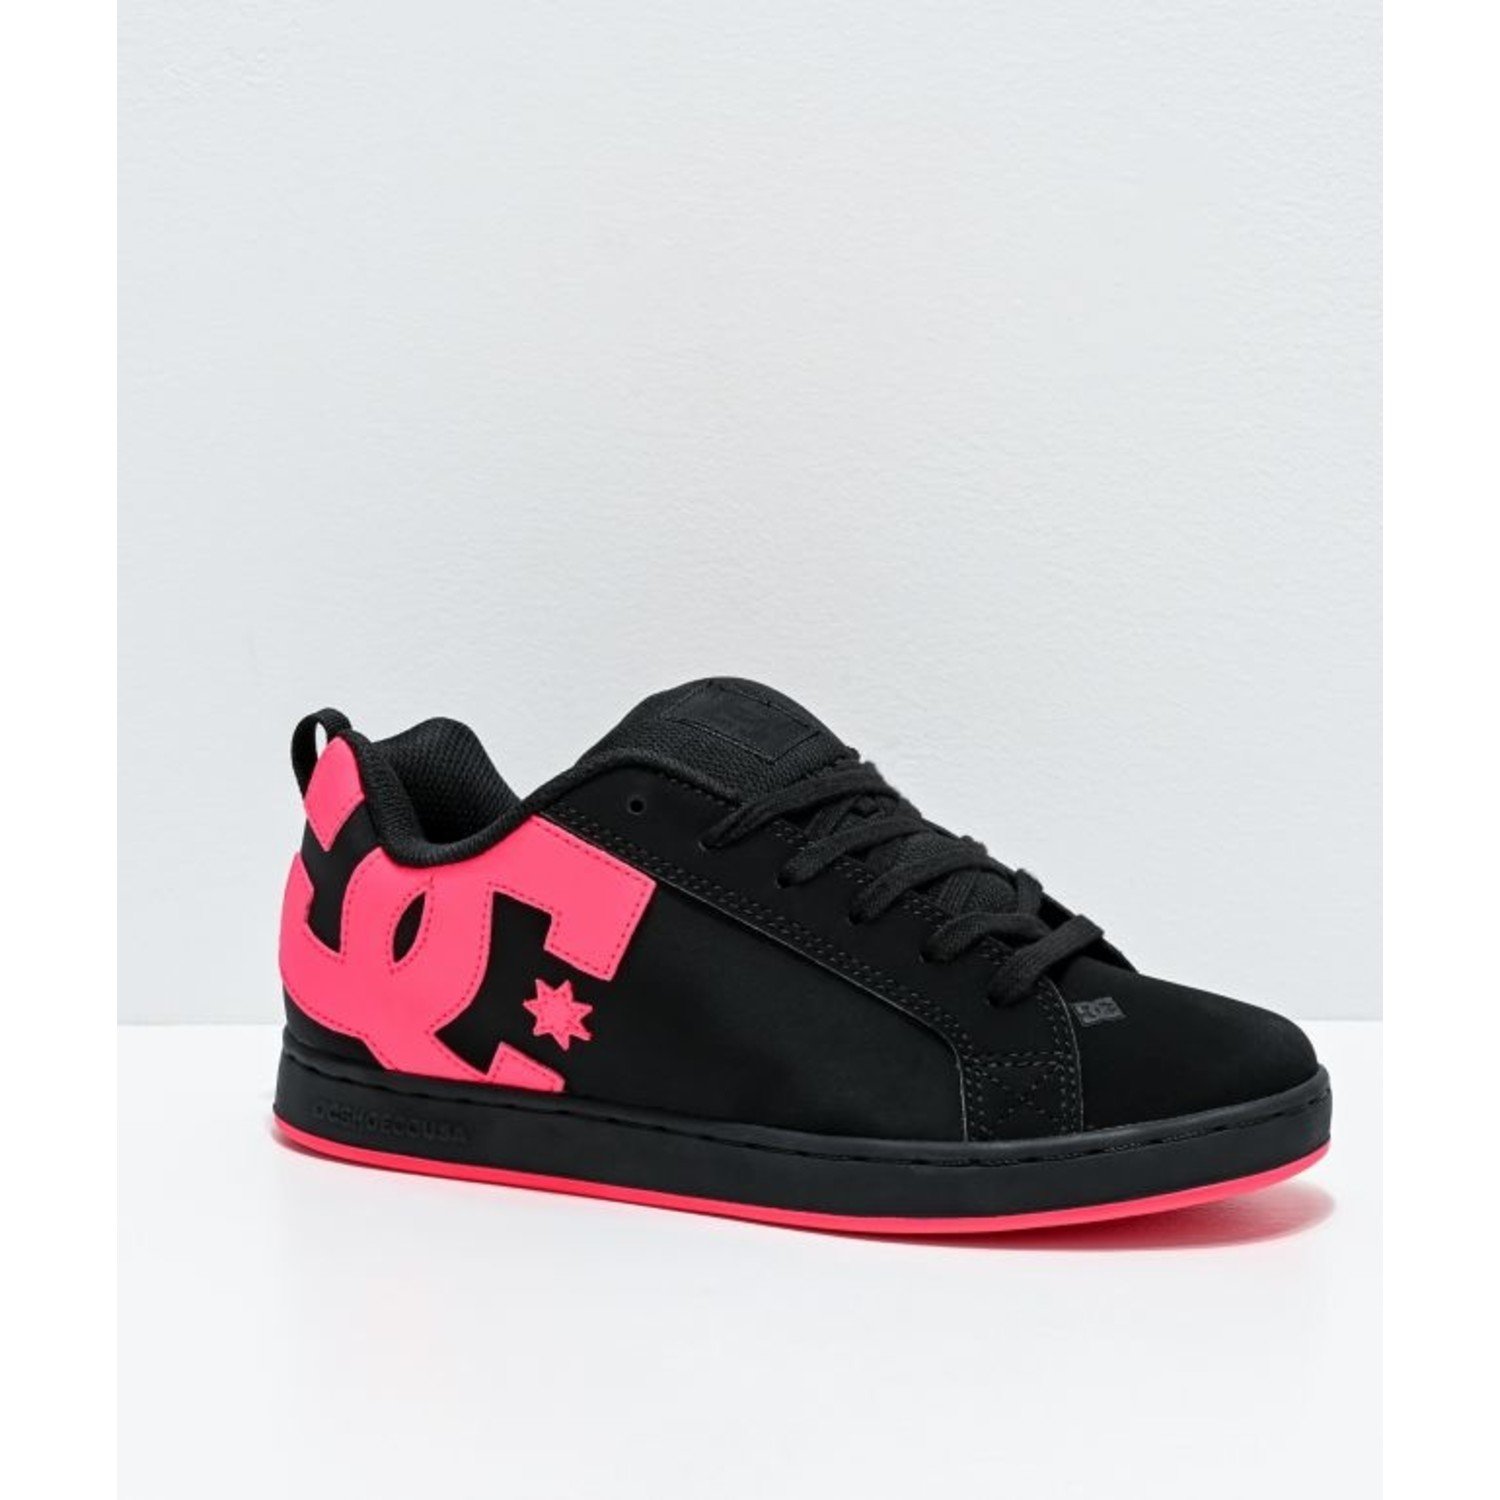 DC Shoes Girls Court Graffik-Black/Pink - Medicine Hat-The Boarding House